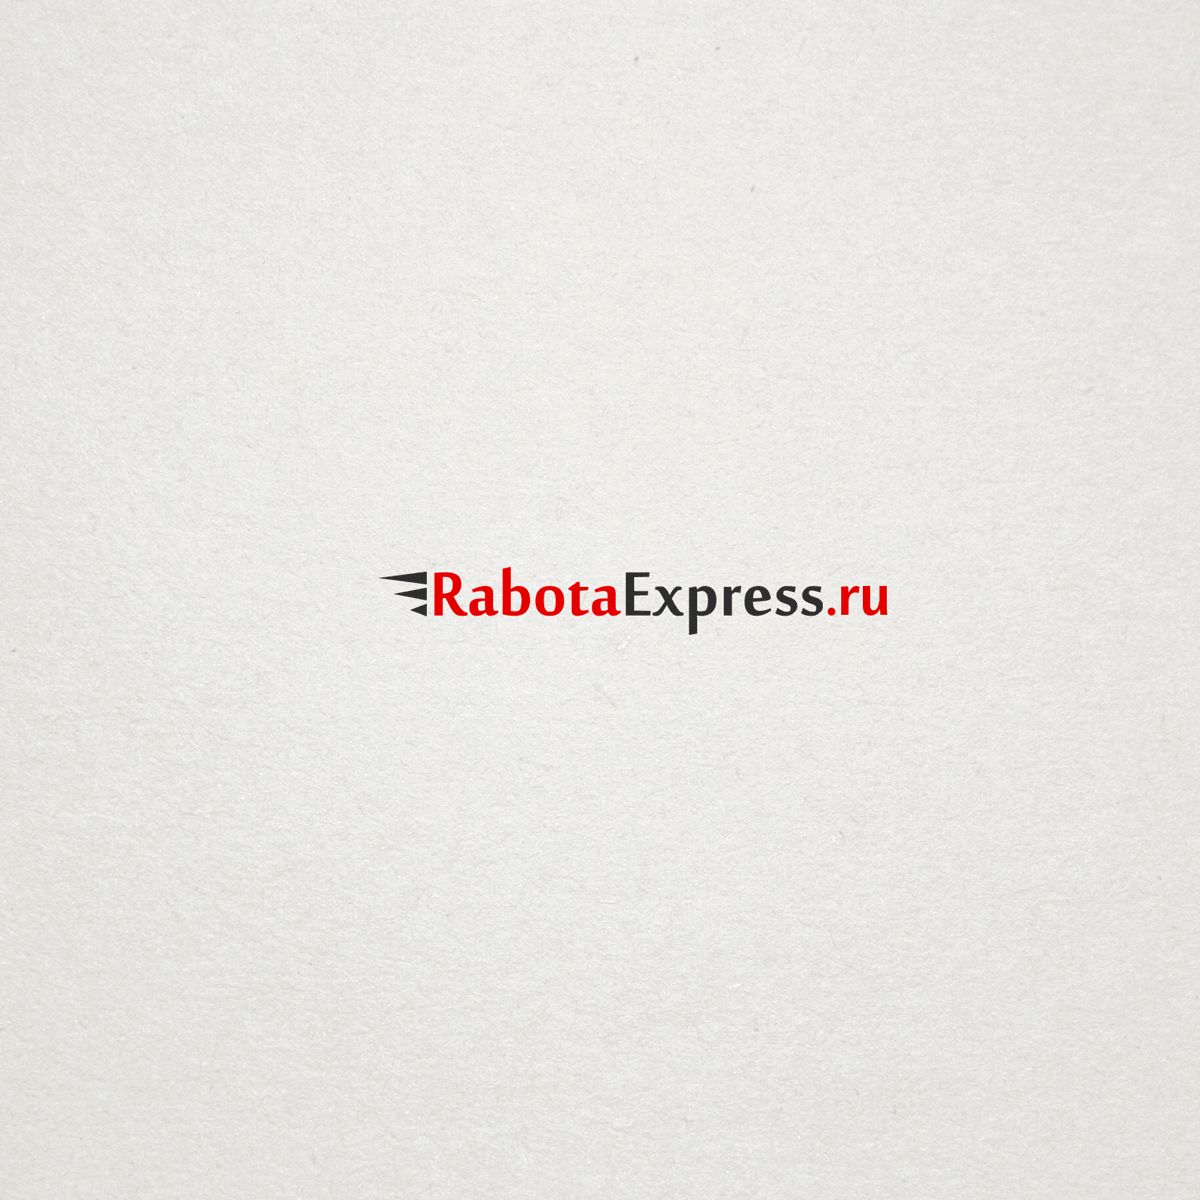 Логотип для RabotaExpress.ru (победителю - бонус) - дизайнер epsylonart